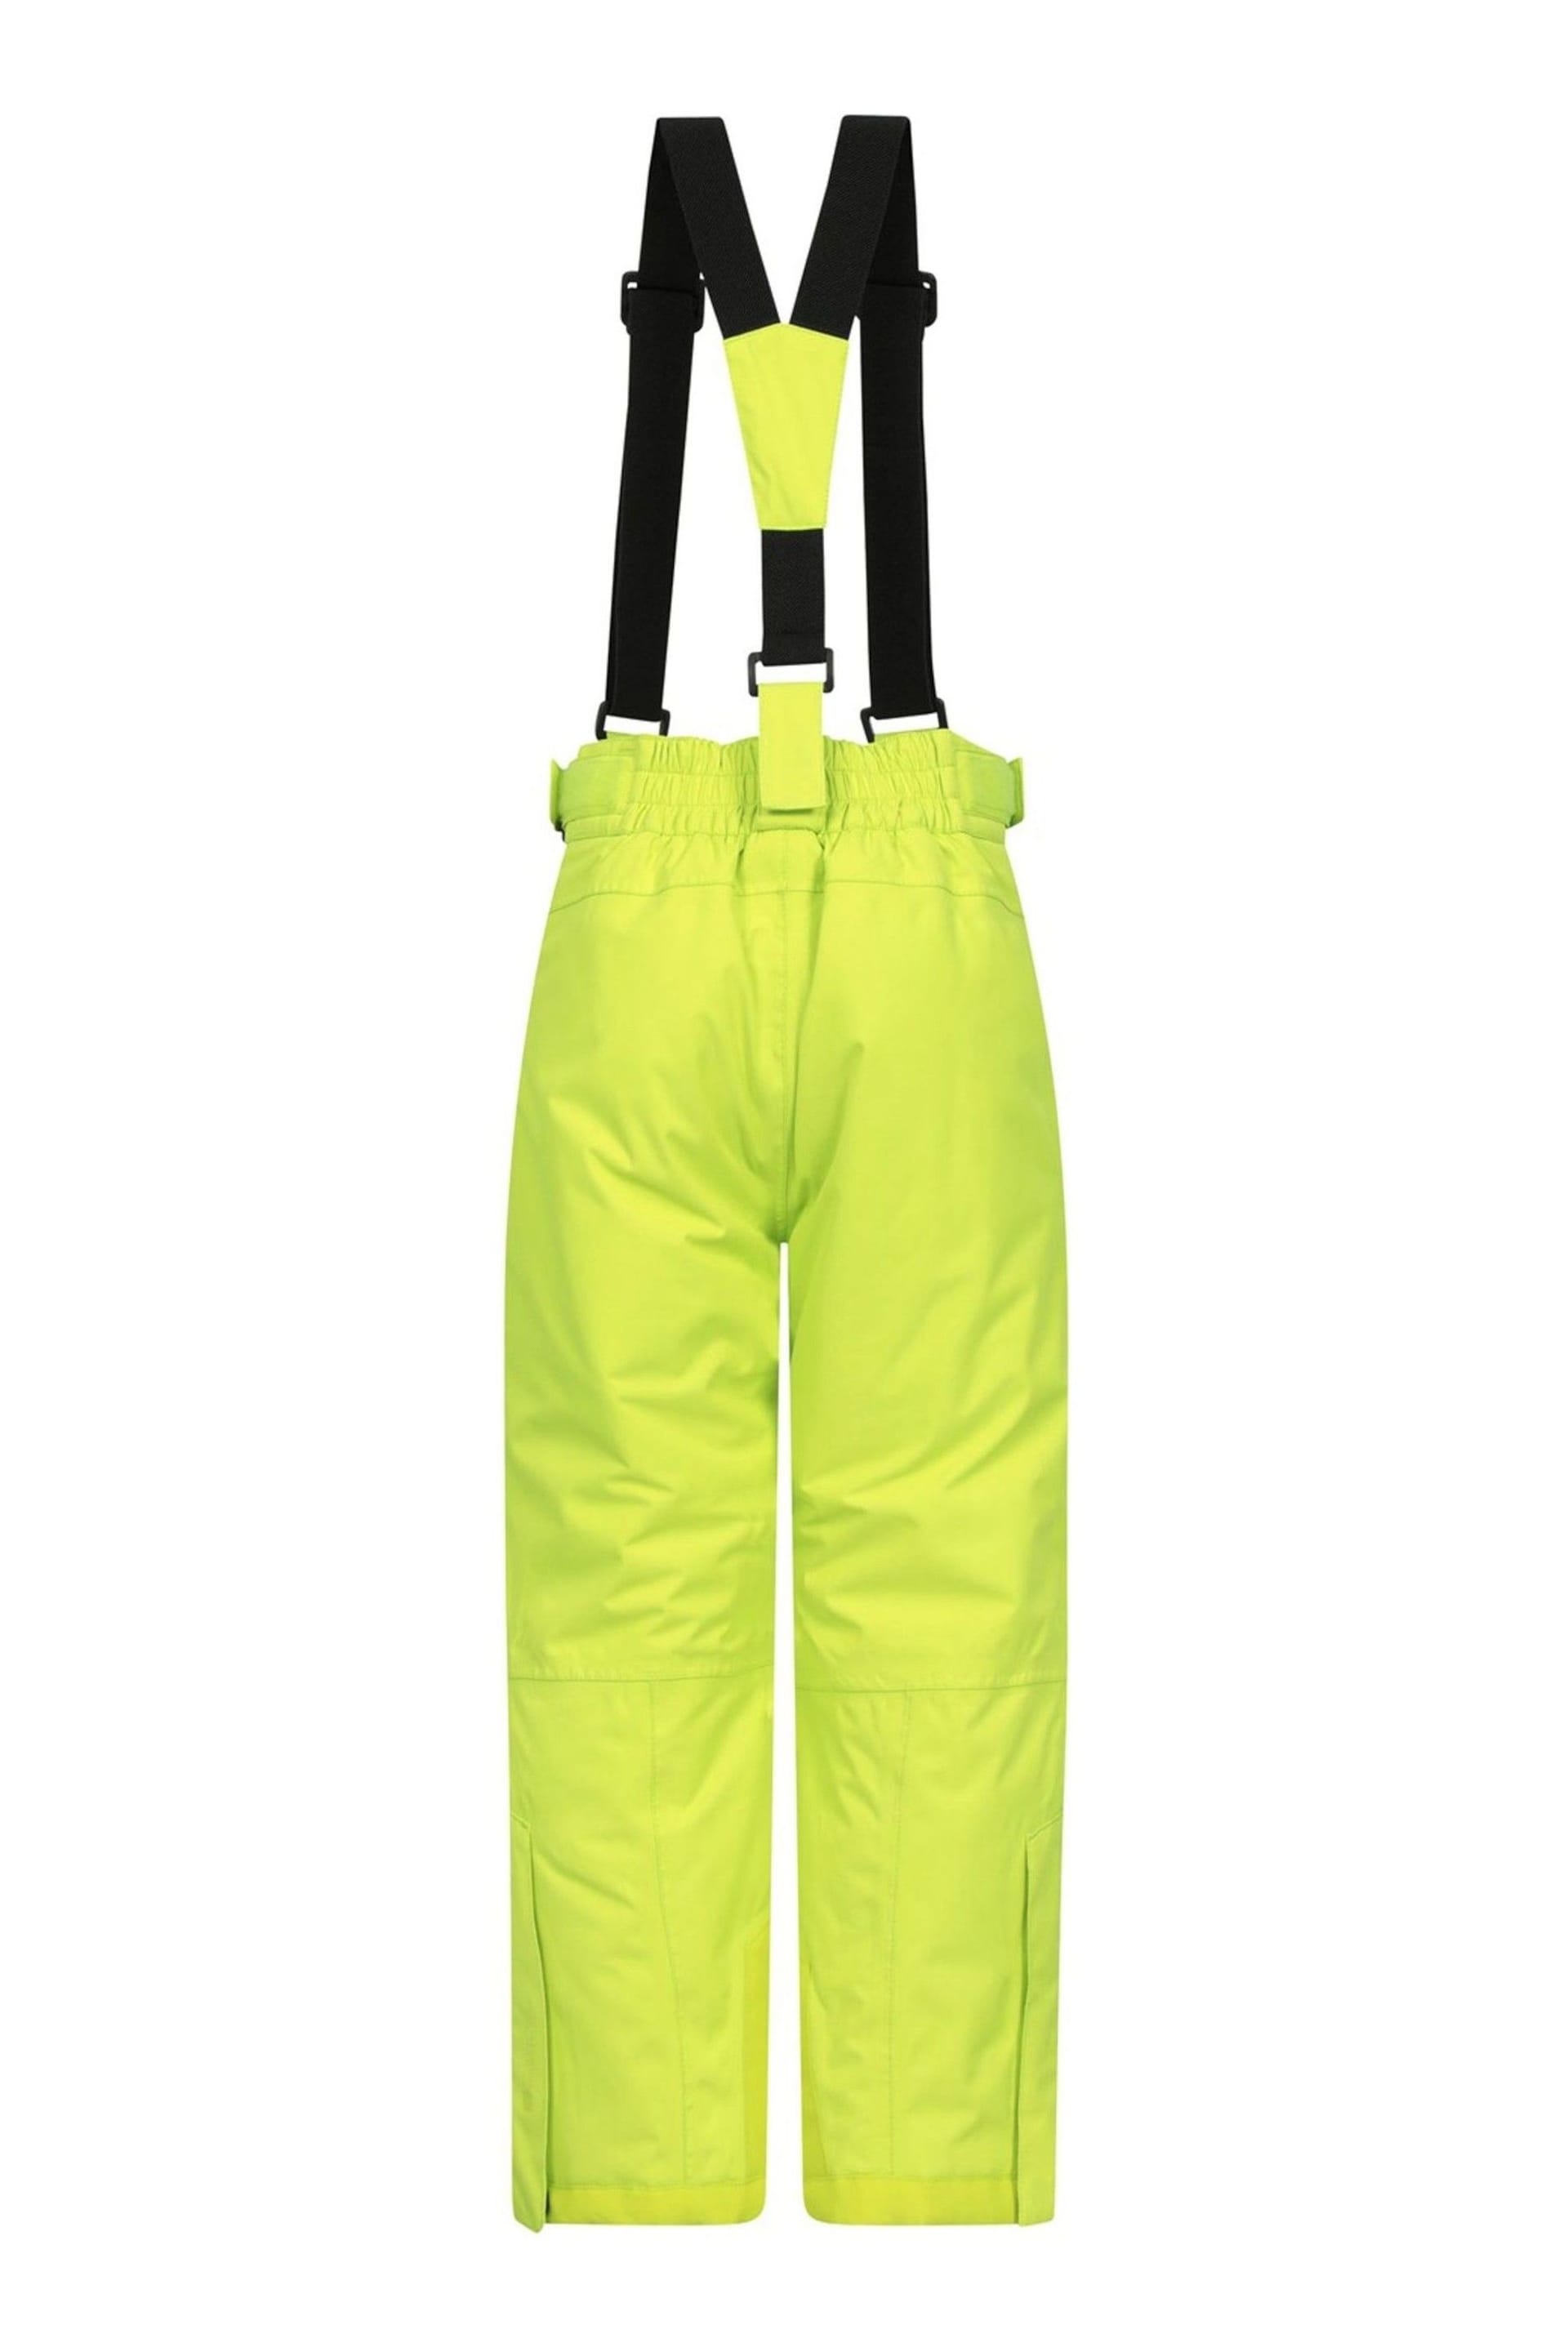 Mountain Warehouse Lime Falcon Extreme Kids Ski Trouser - Image 3 of 7